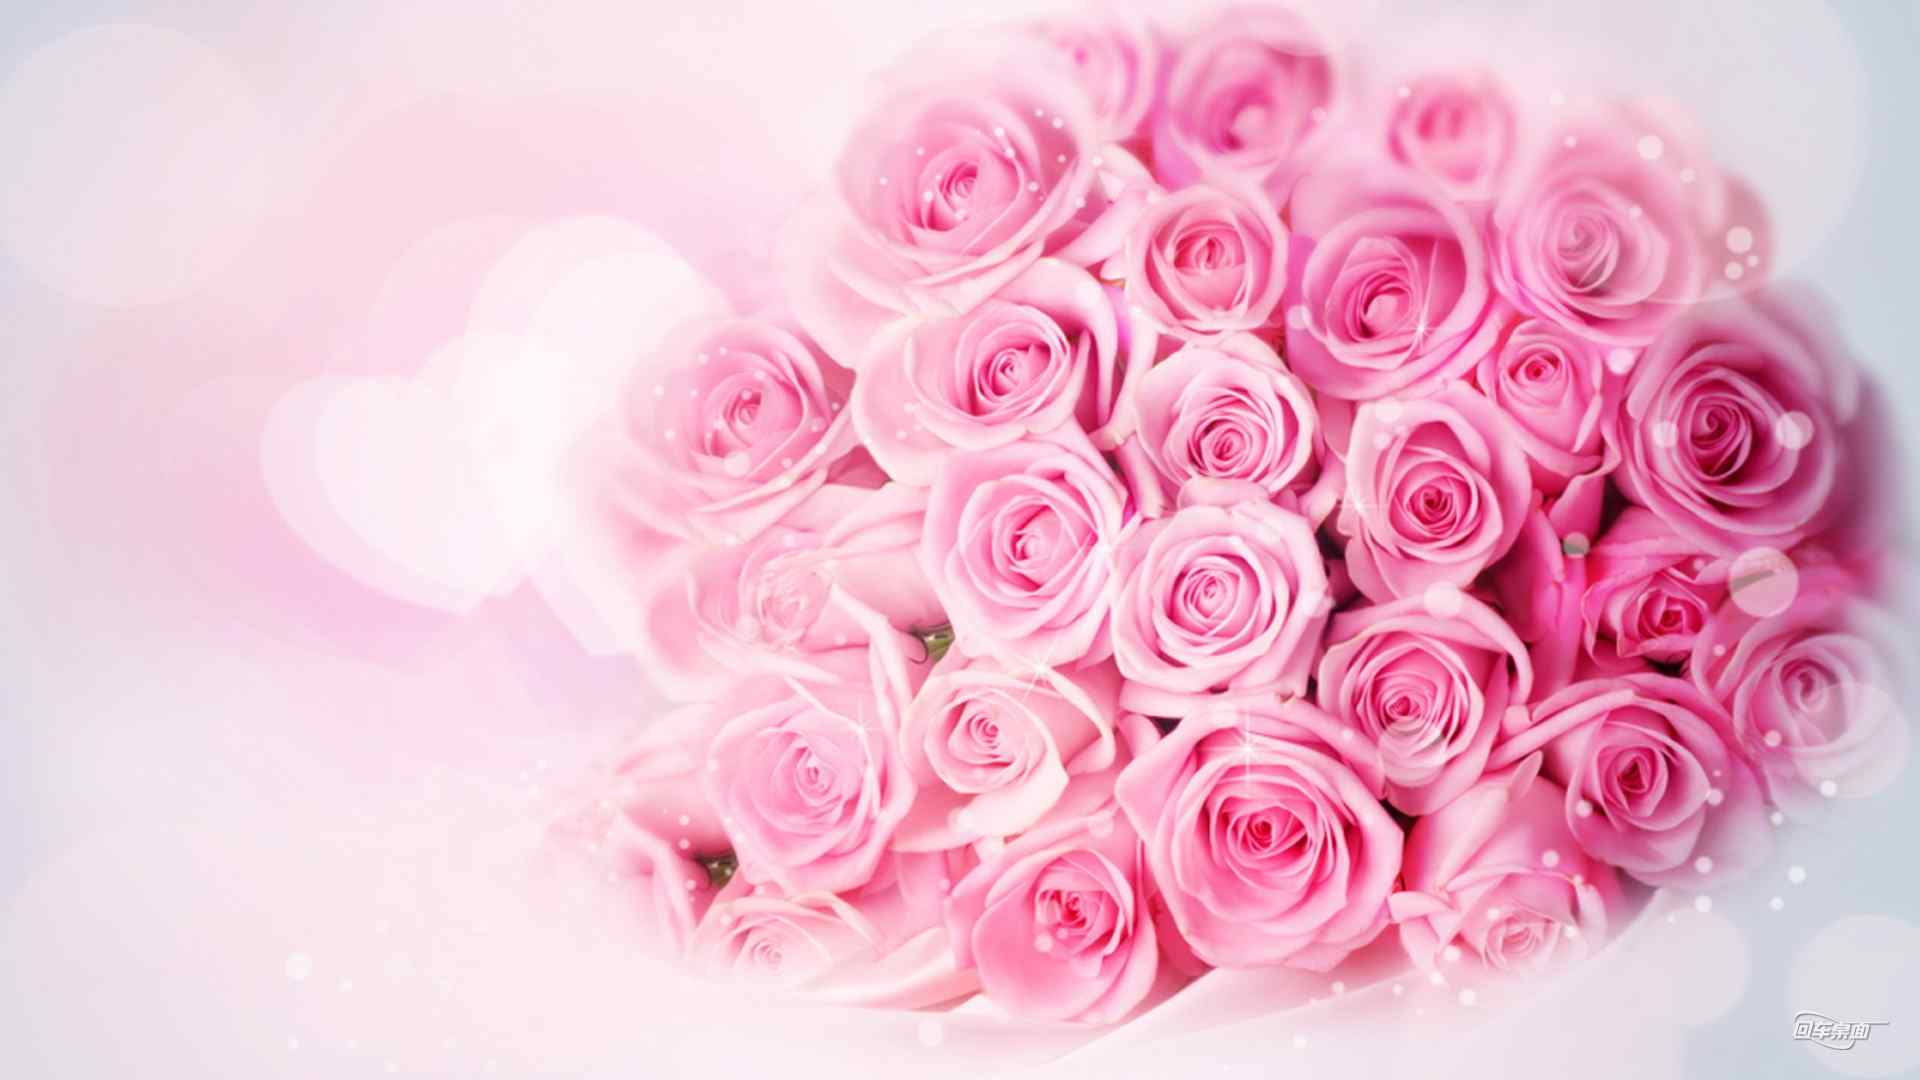 情人节甜蜜粉红色玫瑰宽屏壁纸大全